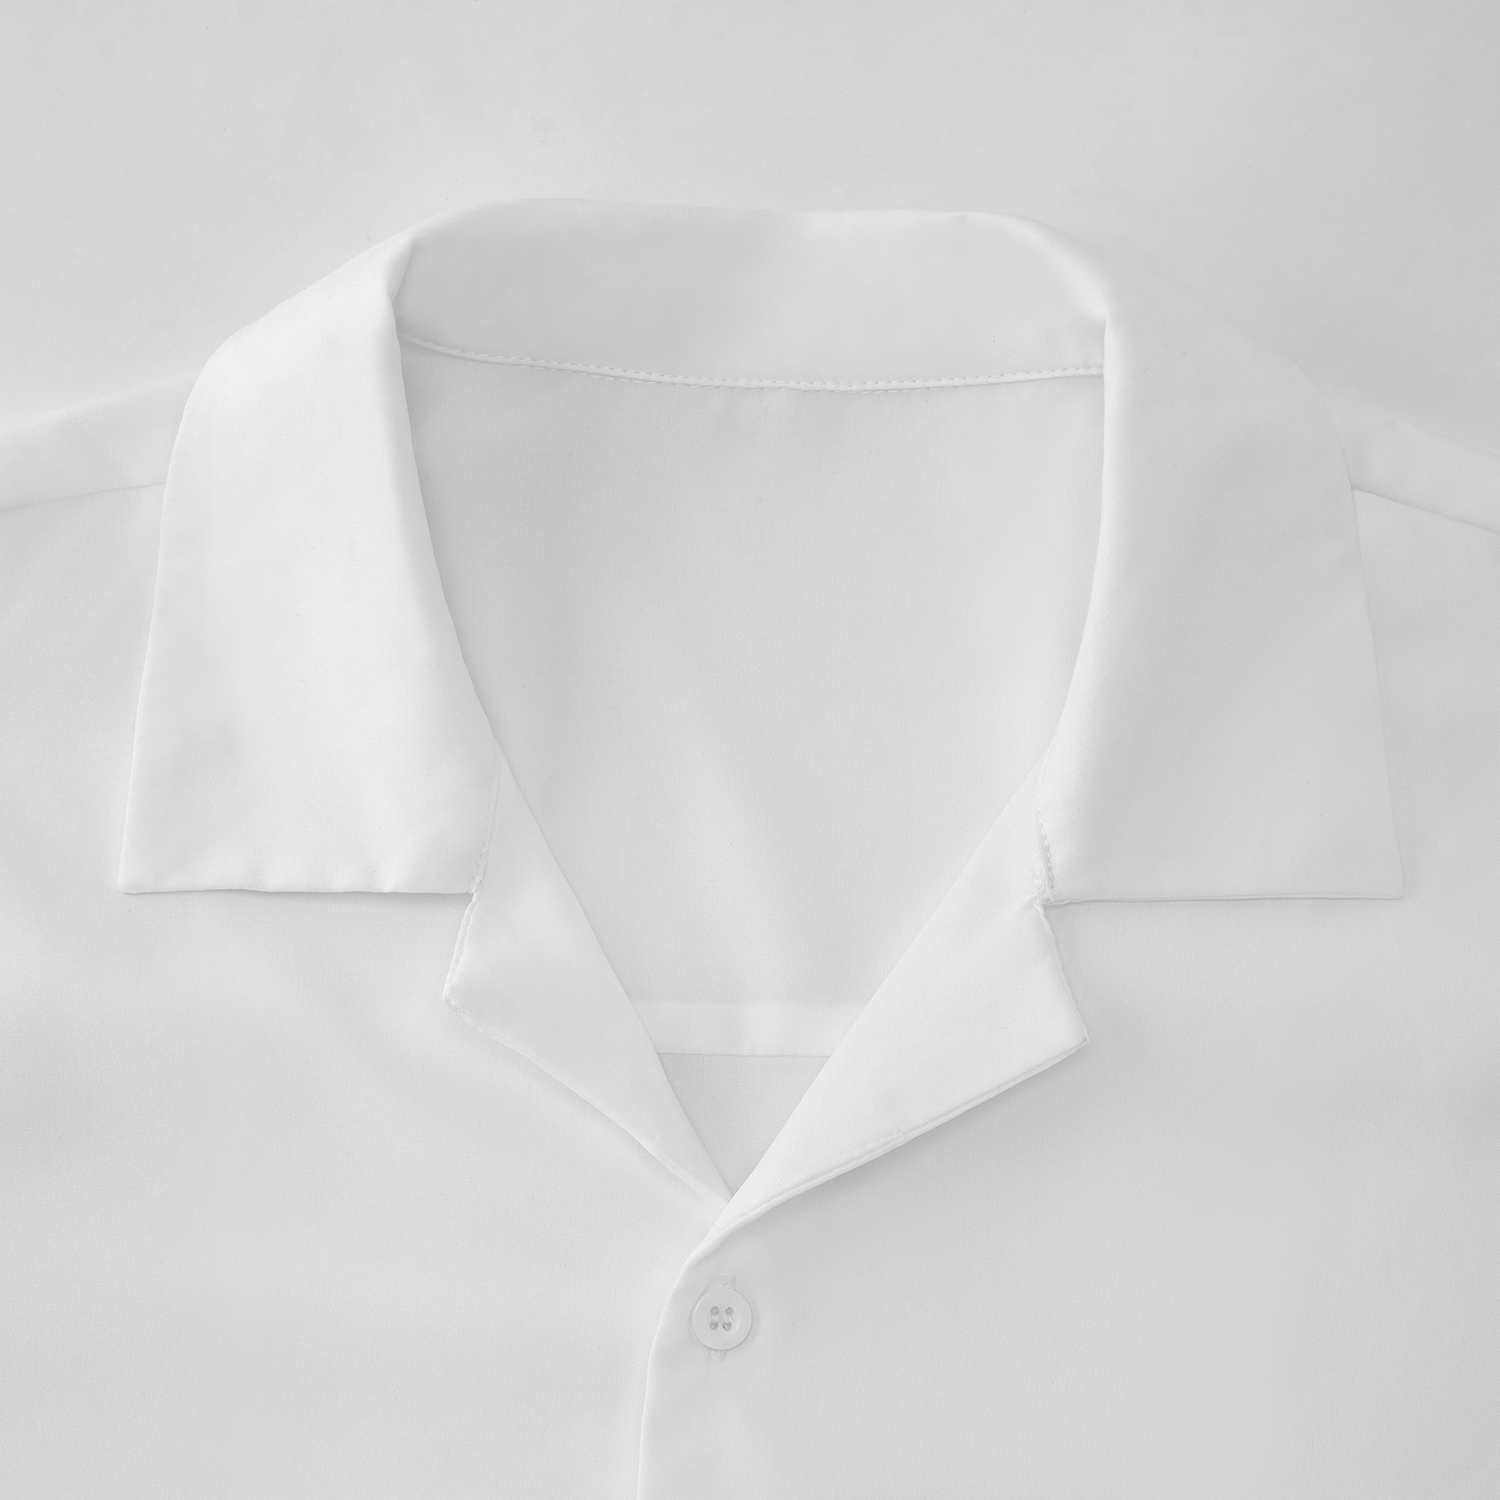 All-Over Print Men's Streetwear Lapel Collar Shirt | HugePOD-5